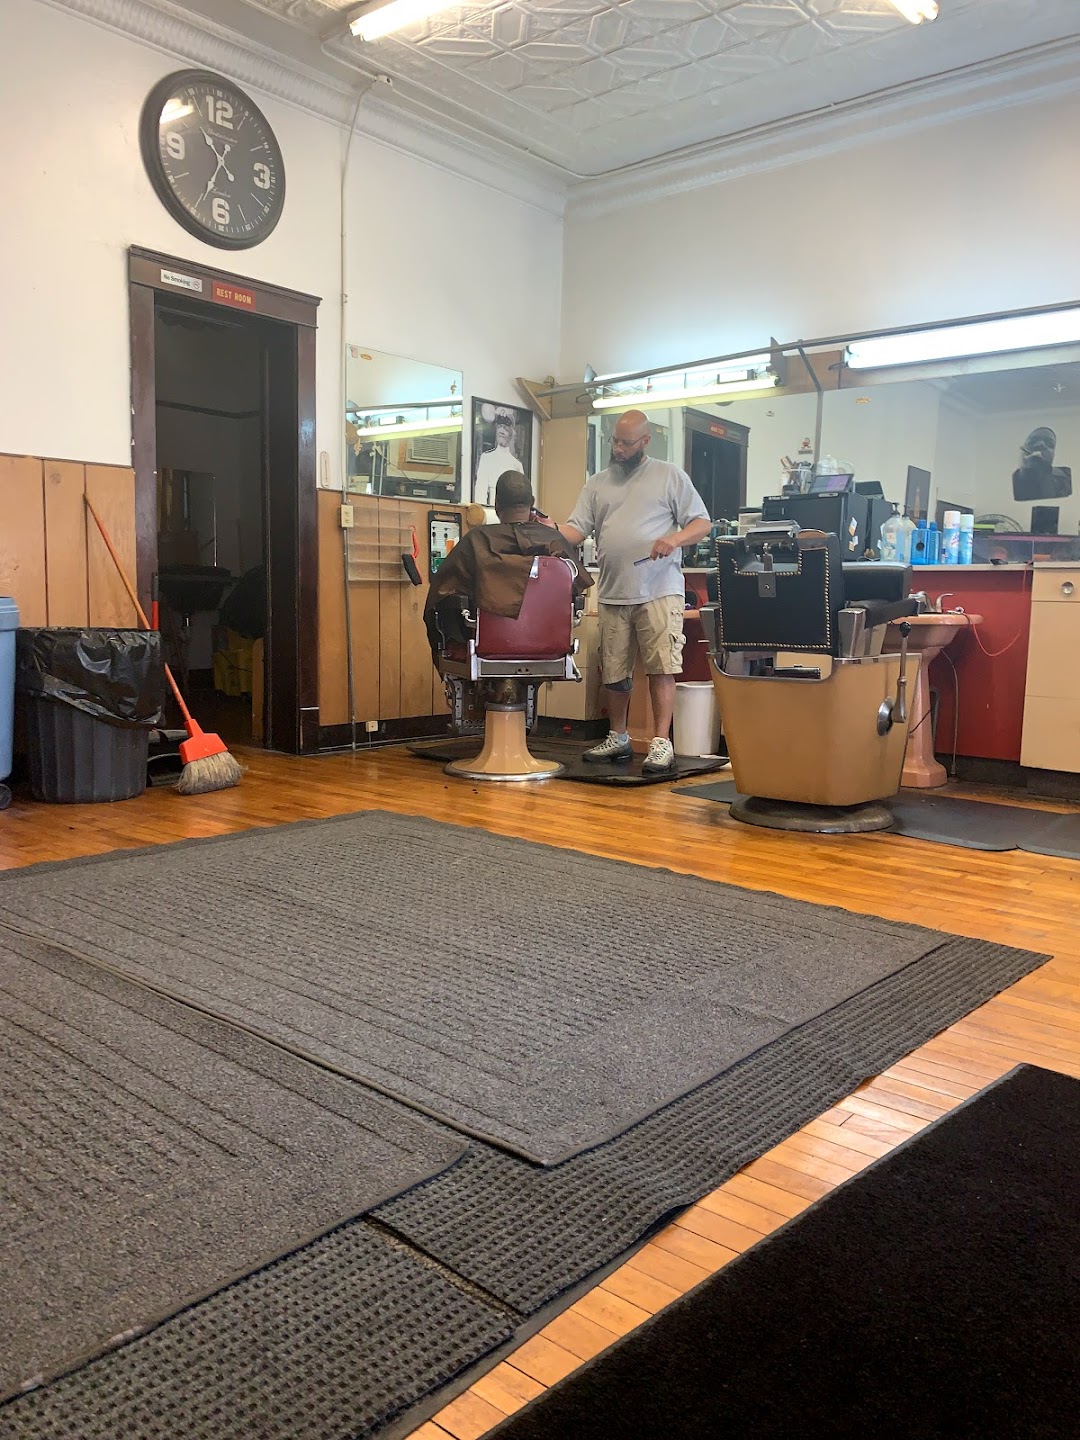 Els Barber Shop